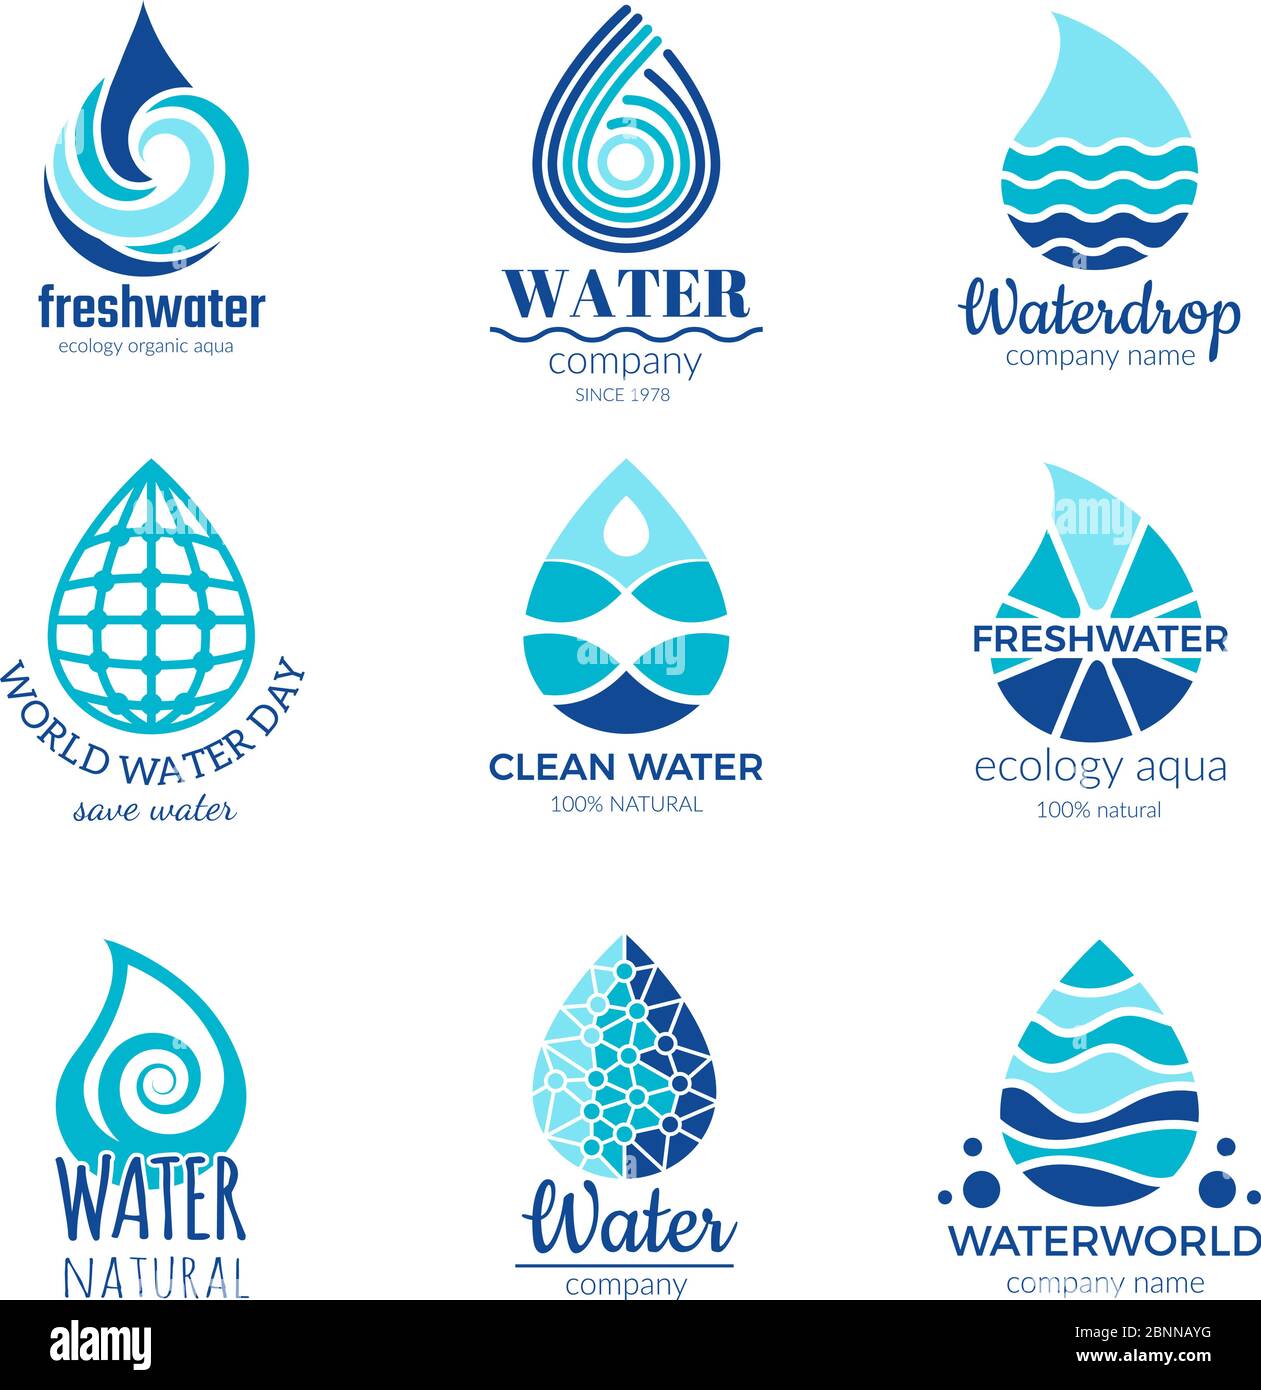 Water Logos And Names